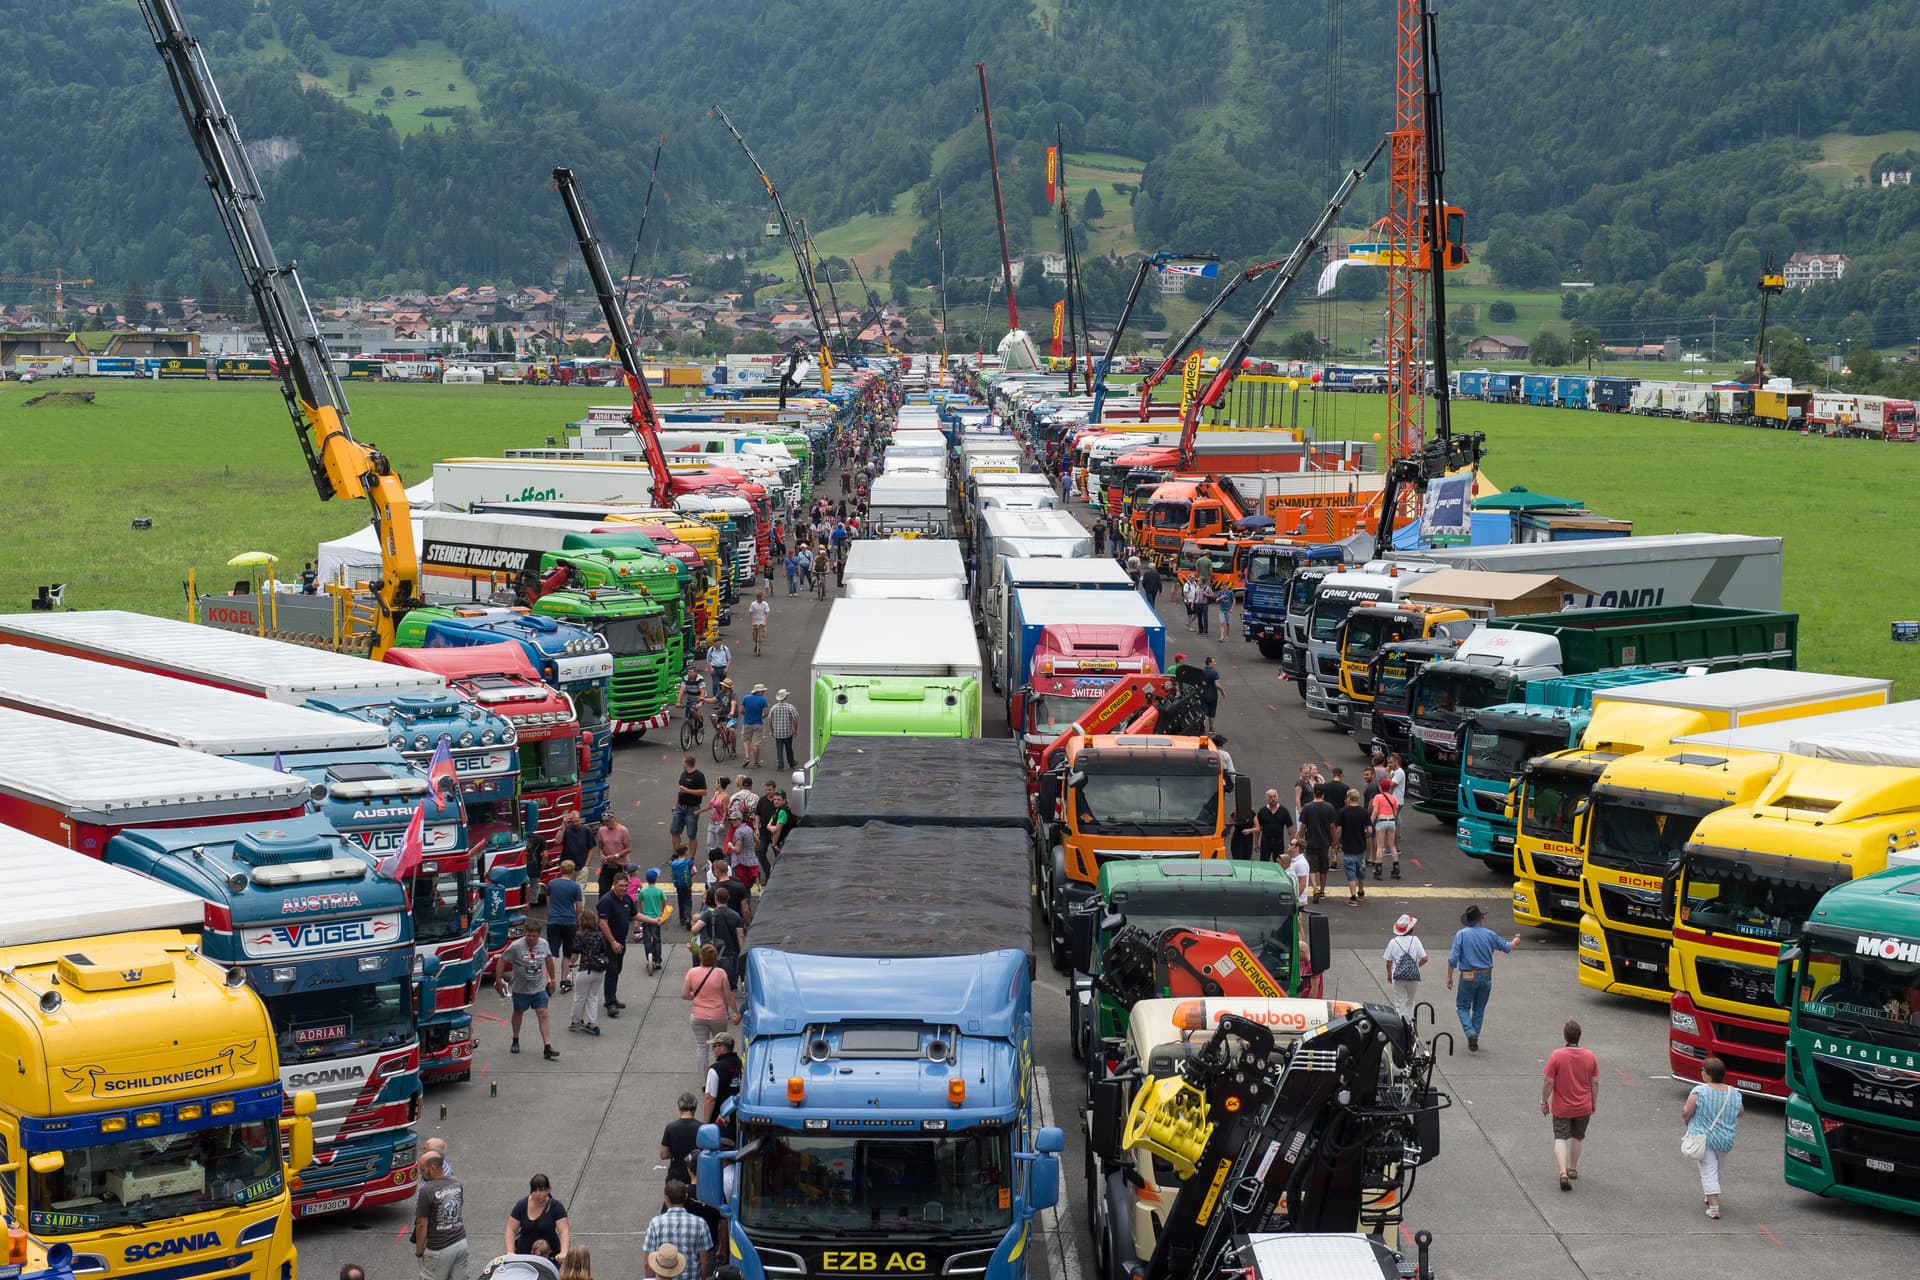 Festival des camionneurs